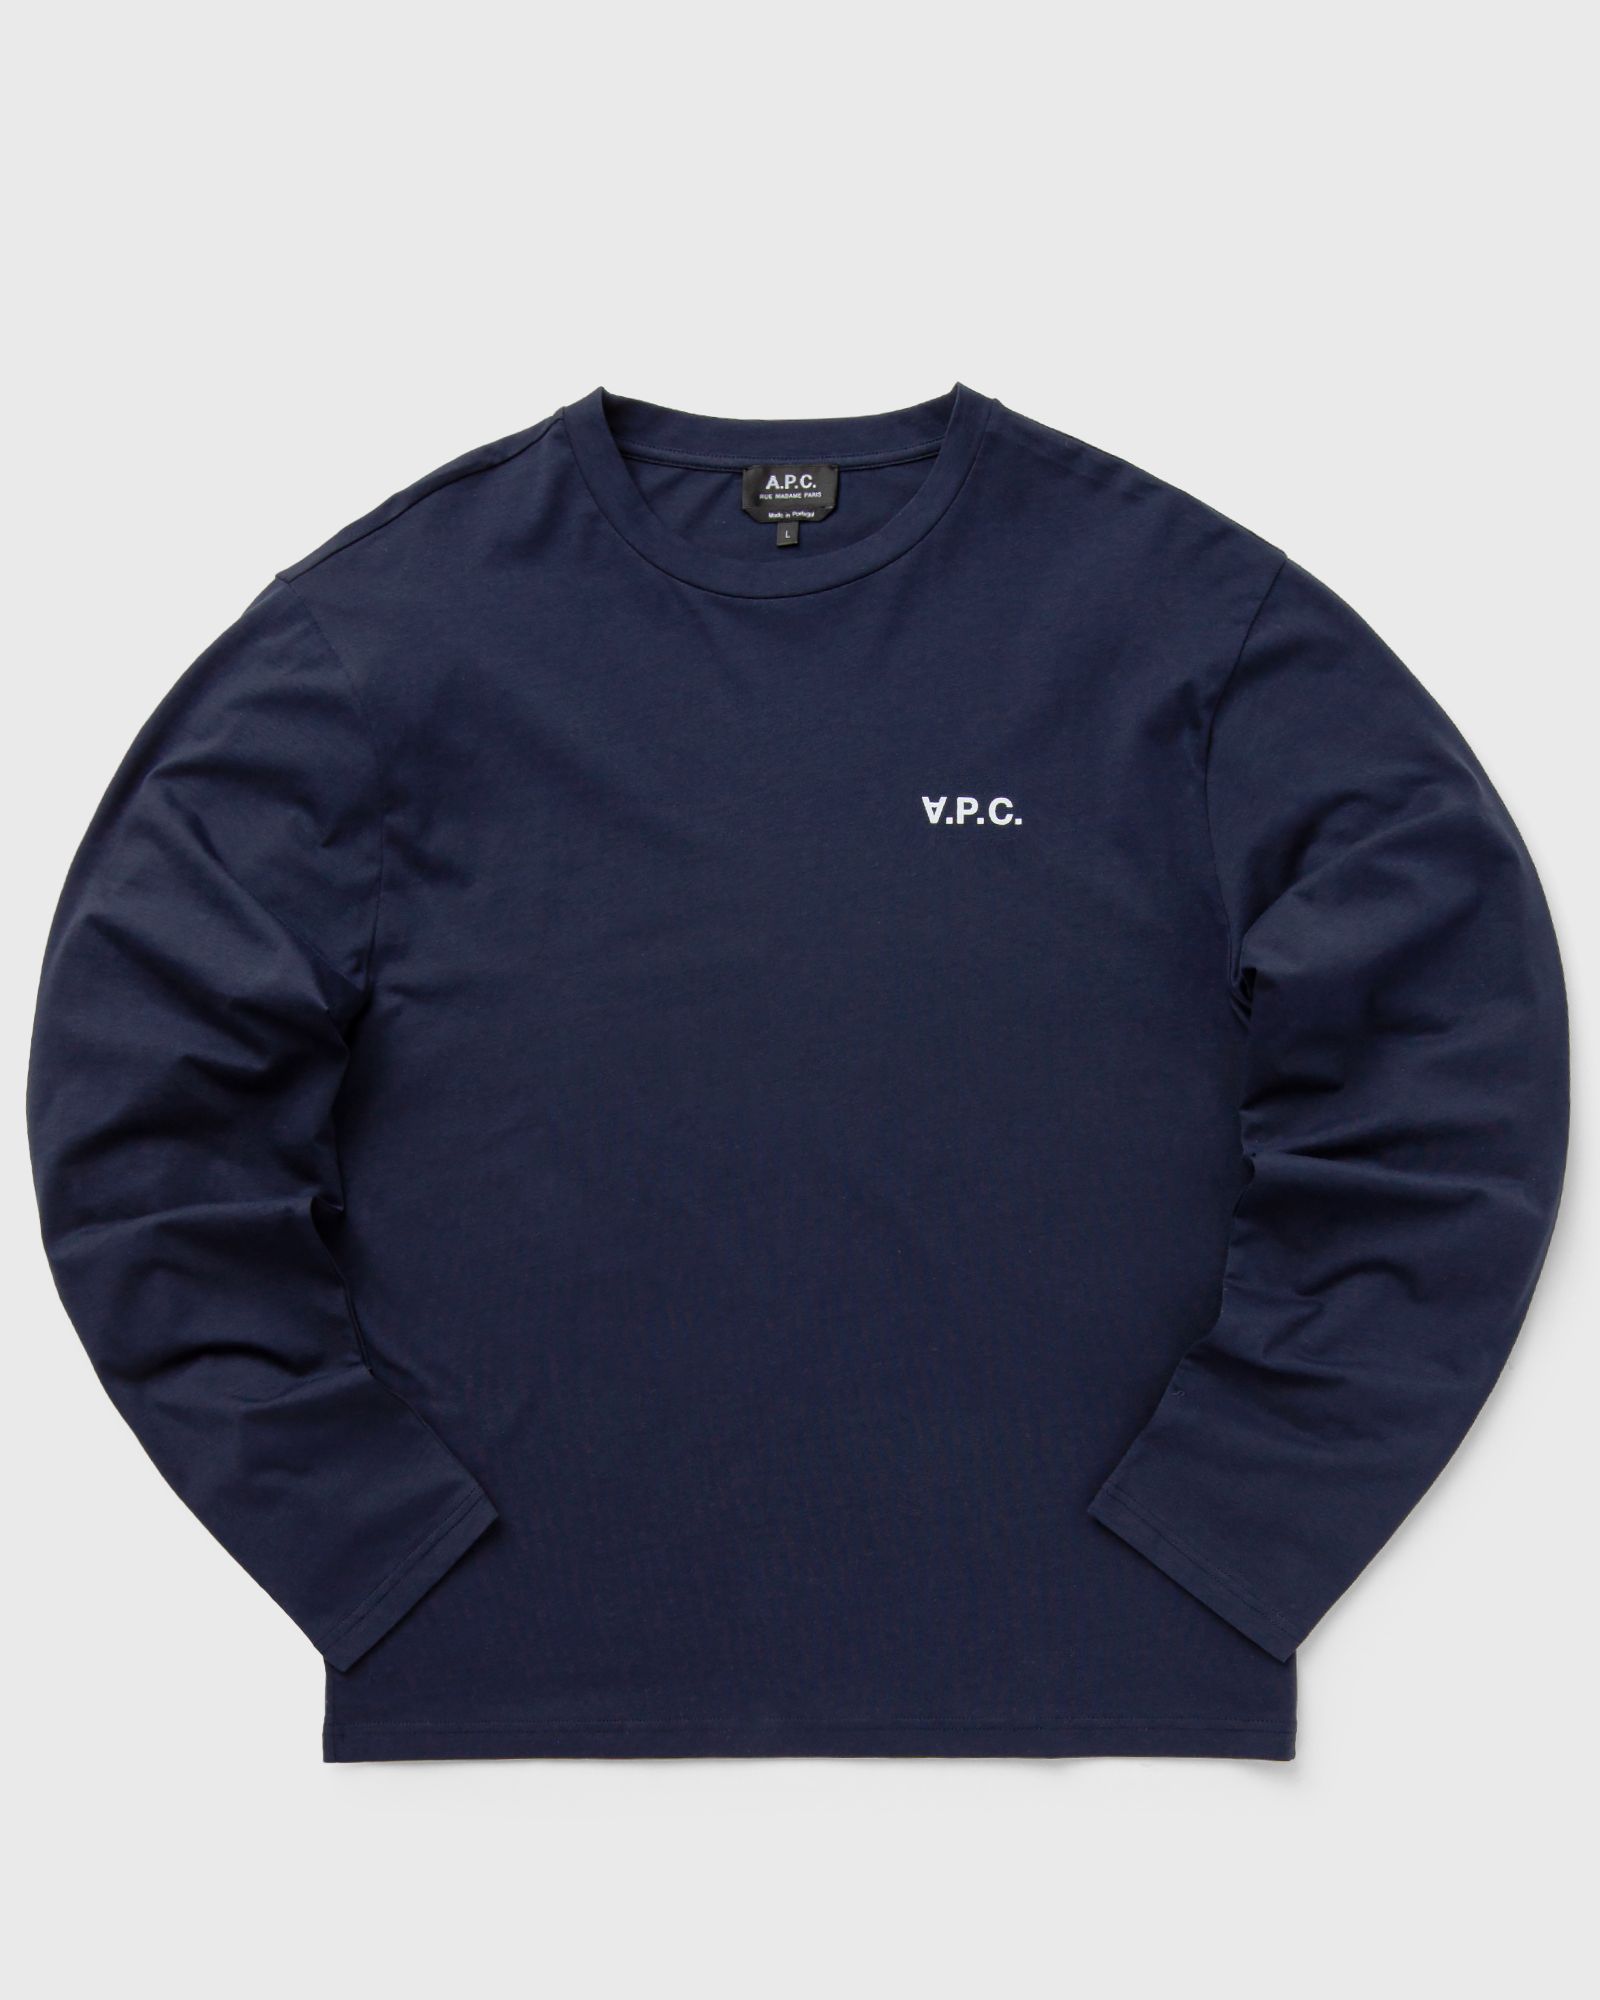 A.P.C. - t-shirt frankie men longsleeves blue in größe:m